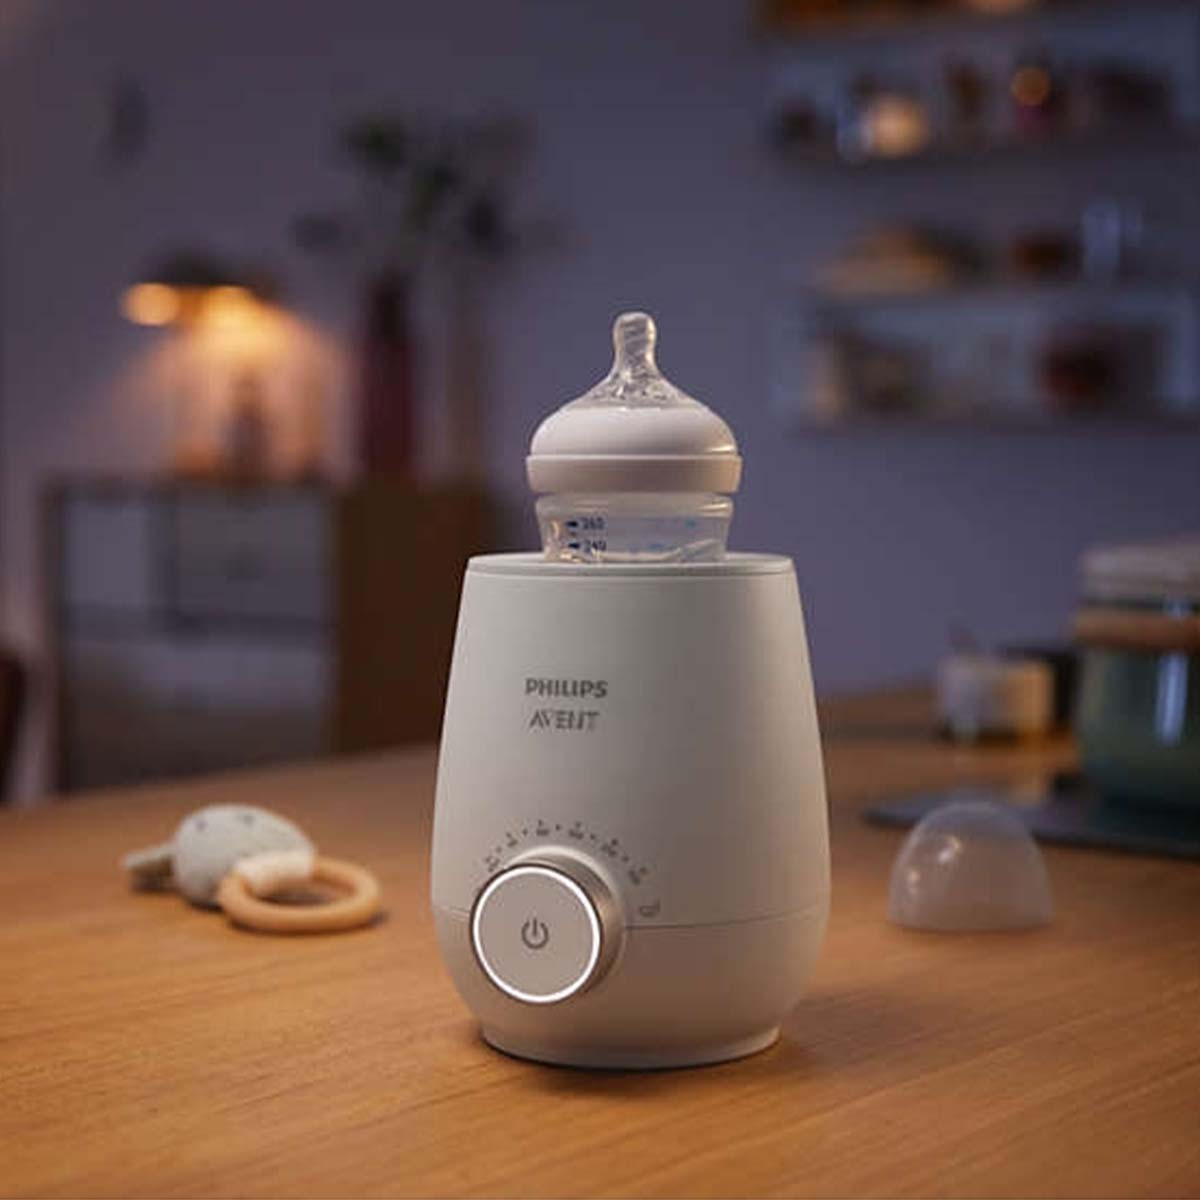 De de Philips Avent flesverwarmer fast is een flessenwarmer, waarmee je snel een voeding voor jouw kleintje opwarmt. Een ideaal hulpmiddel, bijvoorbeeld als je 's nachts snel een voeding klaar wil maken voor je baby. VanZus